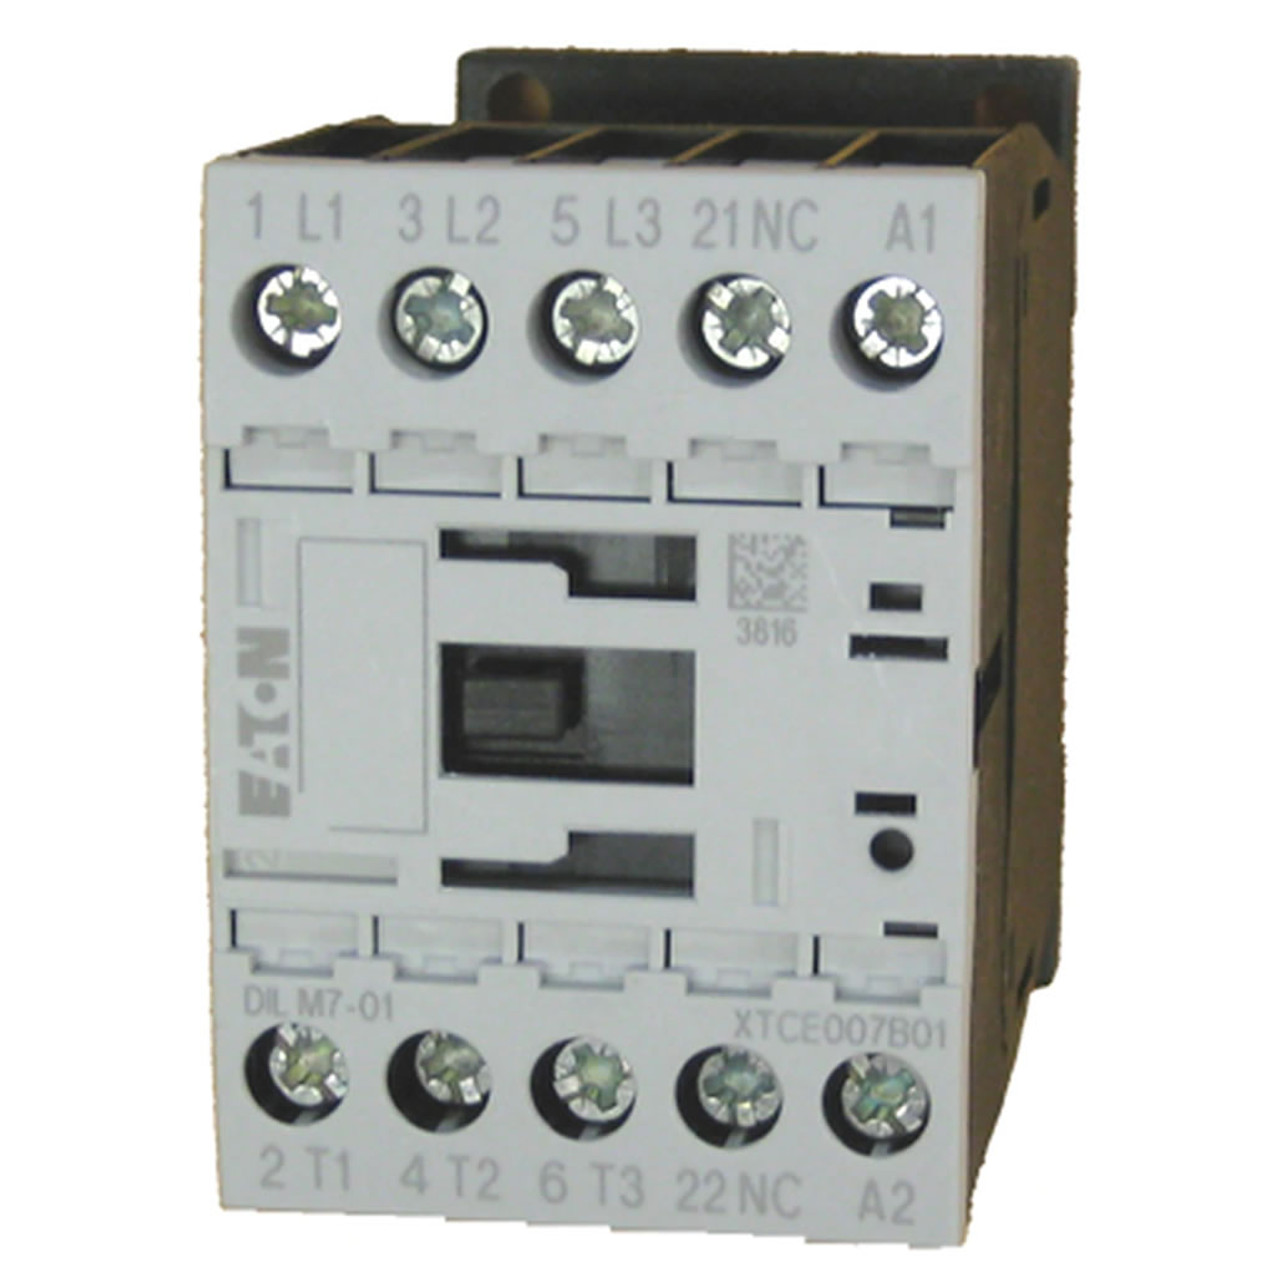 Eaton XTCE007B01W contactor